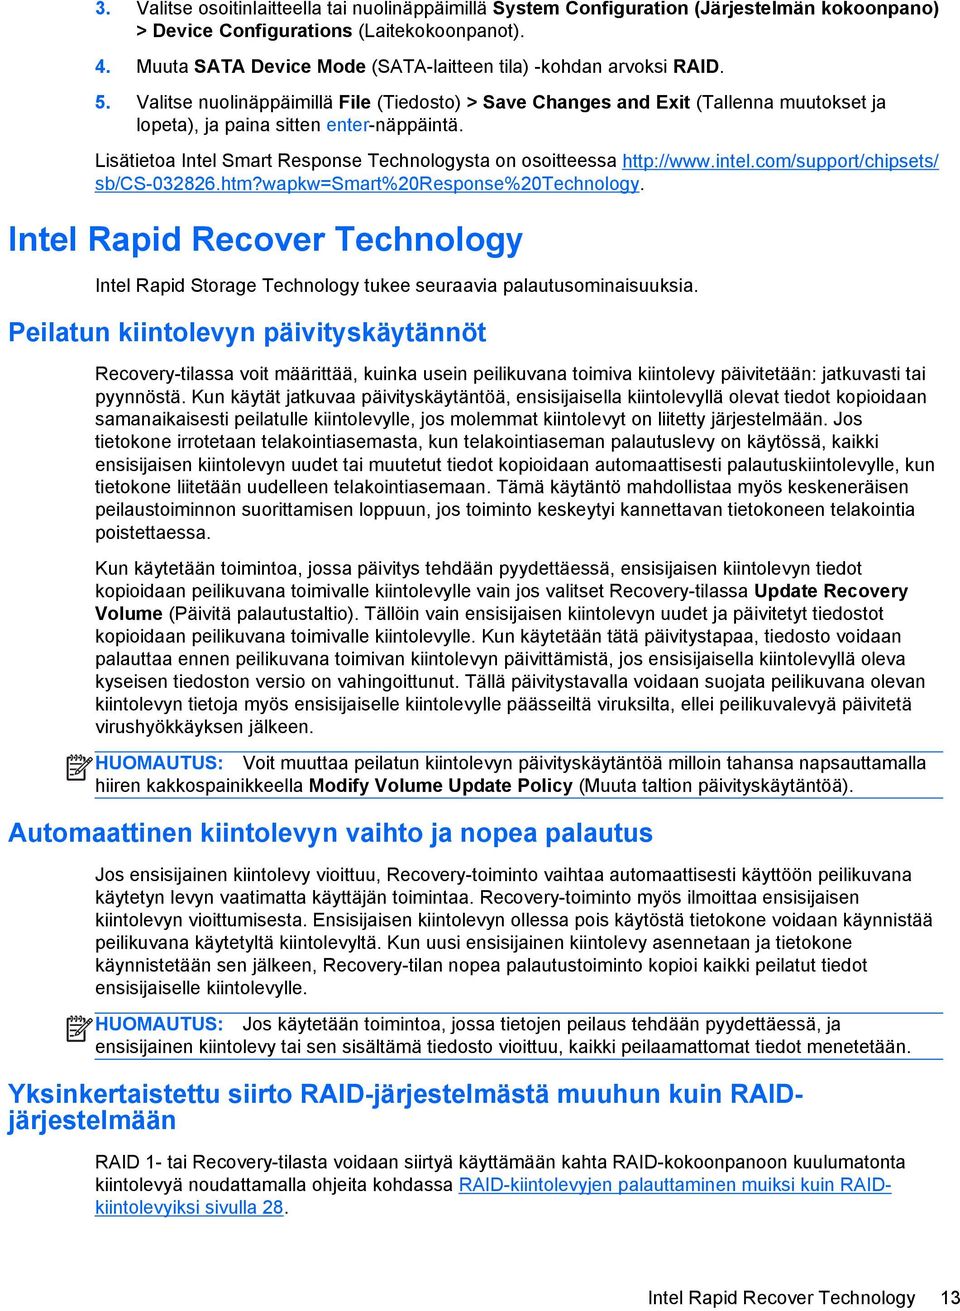 Lisätietoa Intel Smart Response Technologysta on osoitteessa http://www.intel.com/support/chipsets/ sb/cs-032826.htm?wapkw=smart%20response%20technology.